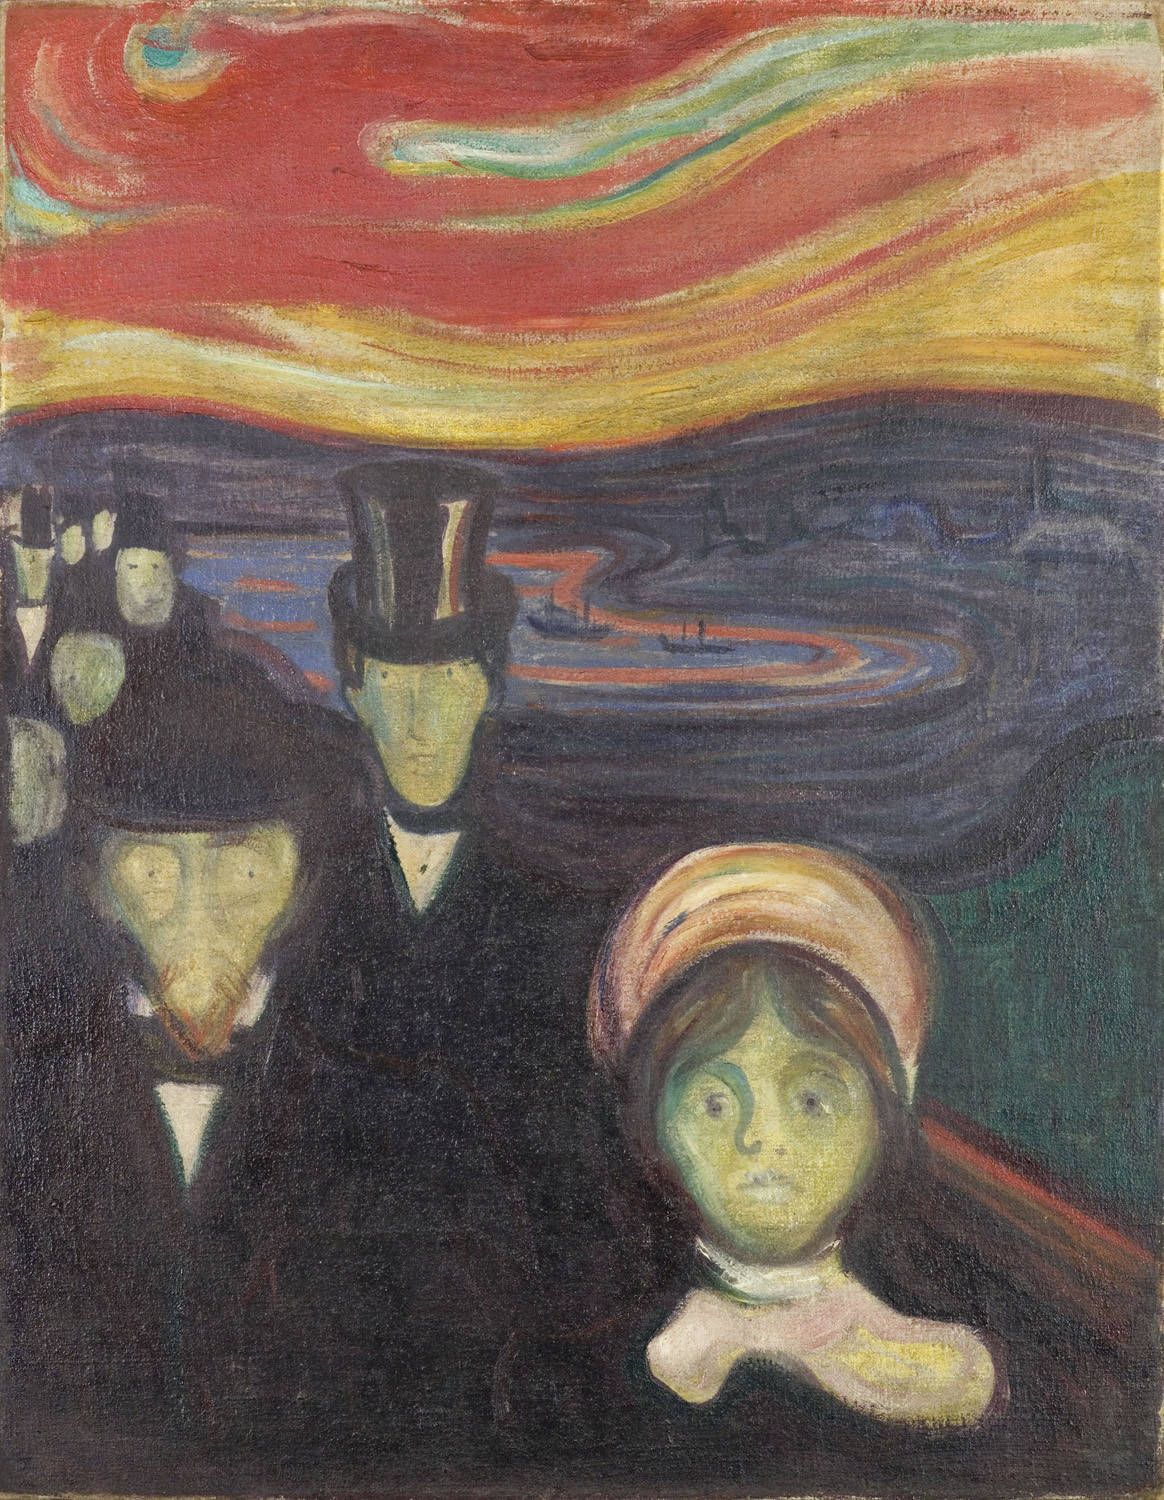 Edvard+Munch-1863-1944 (8).jpg